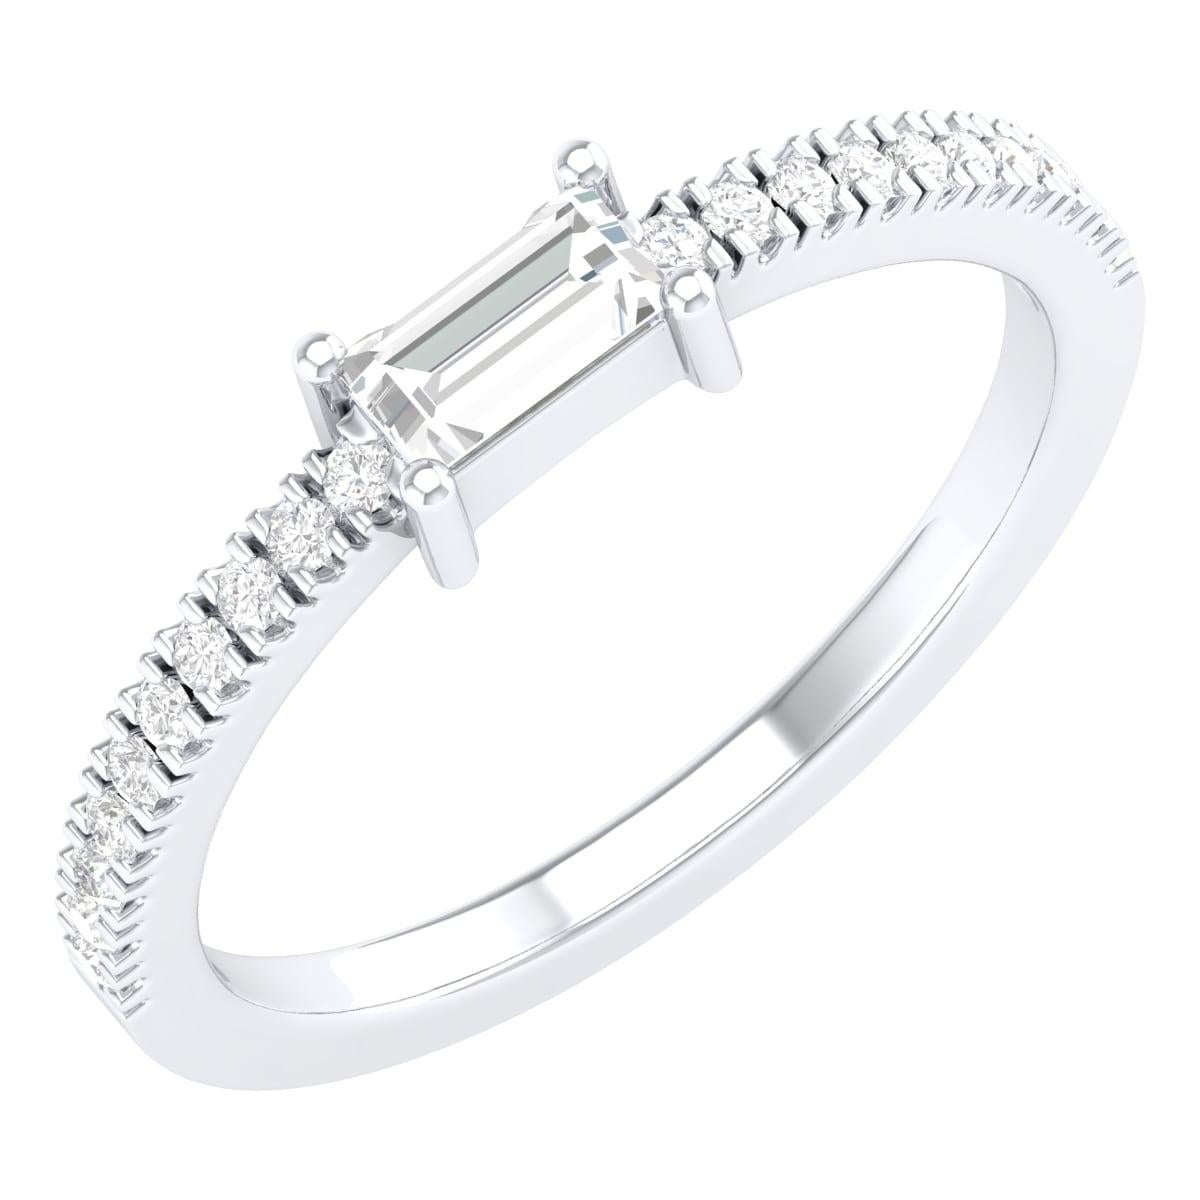 18 Karat White Gold 0.4 Carat Diamond Infinity Band Ring